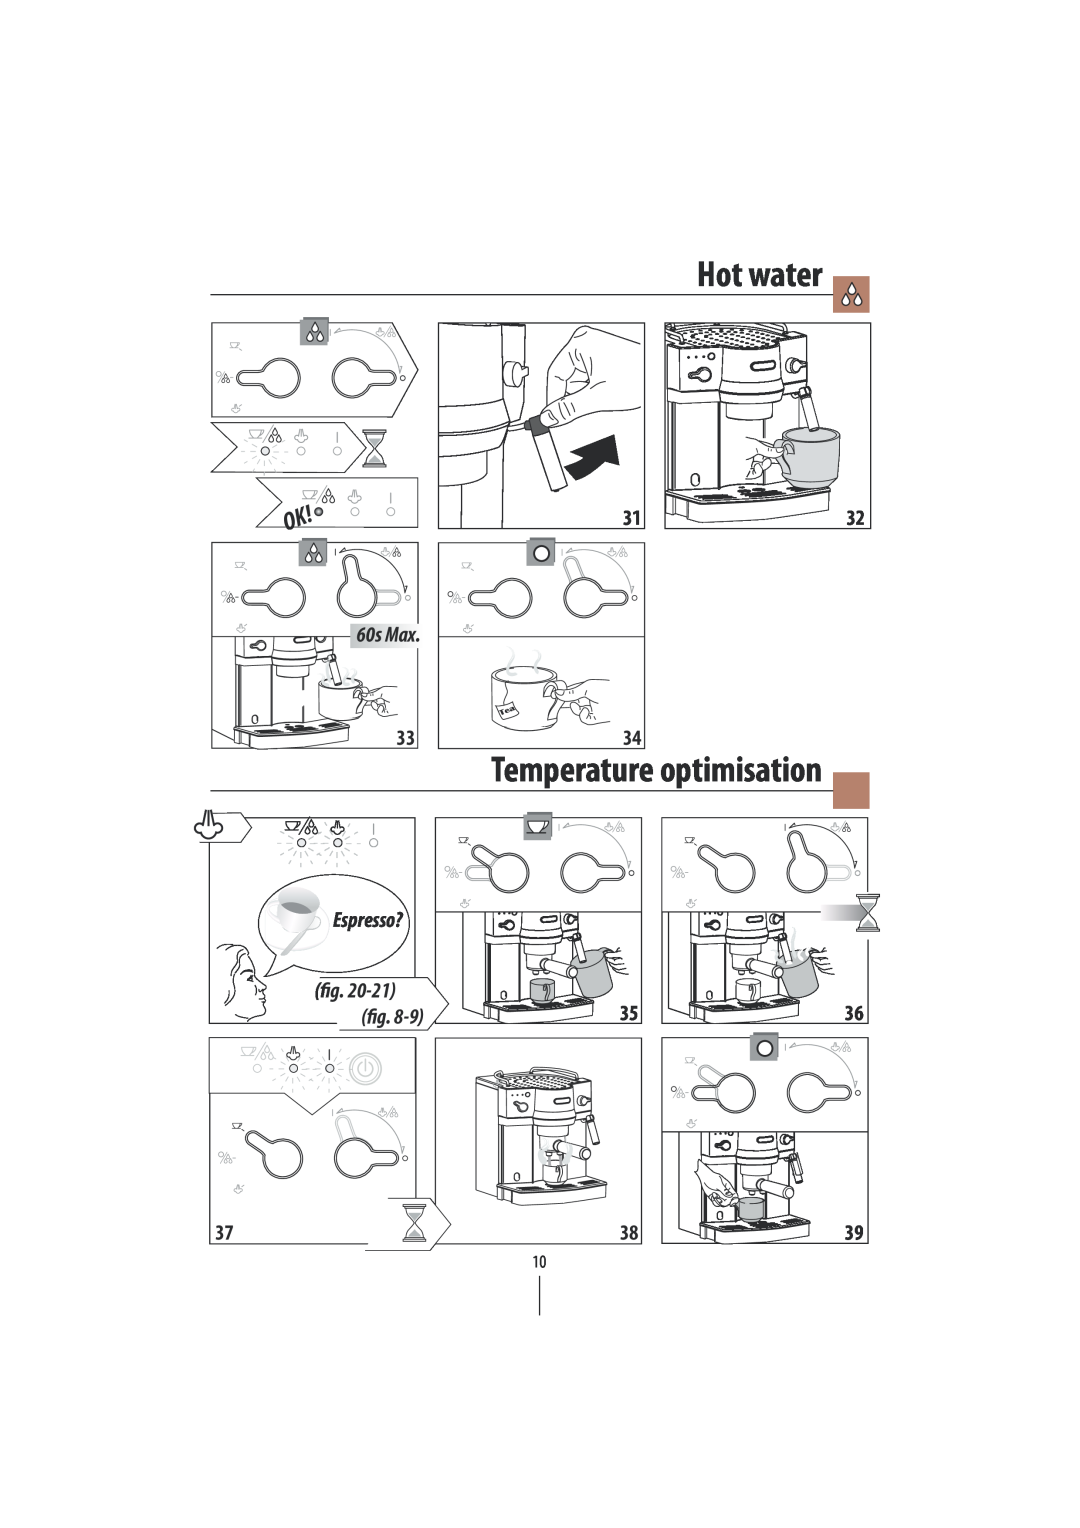 DeLonghi EC820 manual Hot water, Temperature optimisation, Espresso?, 60s Max 